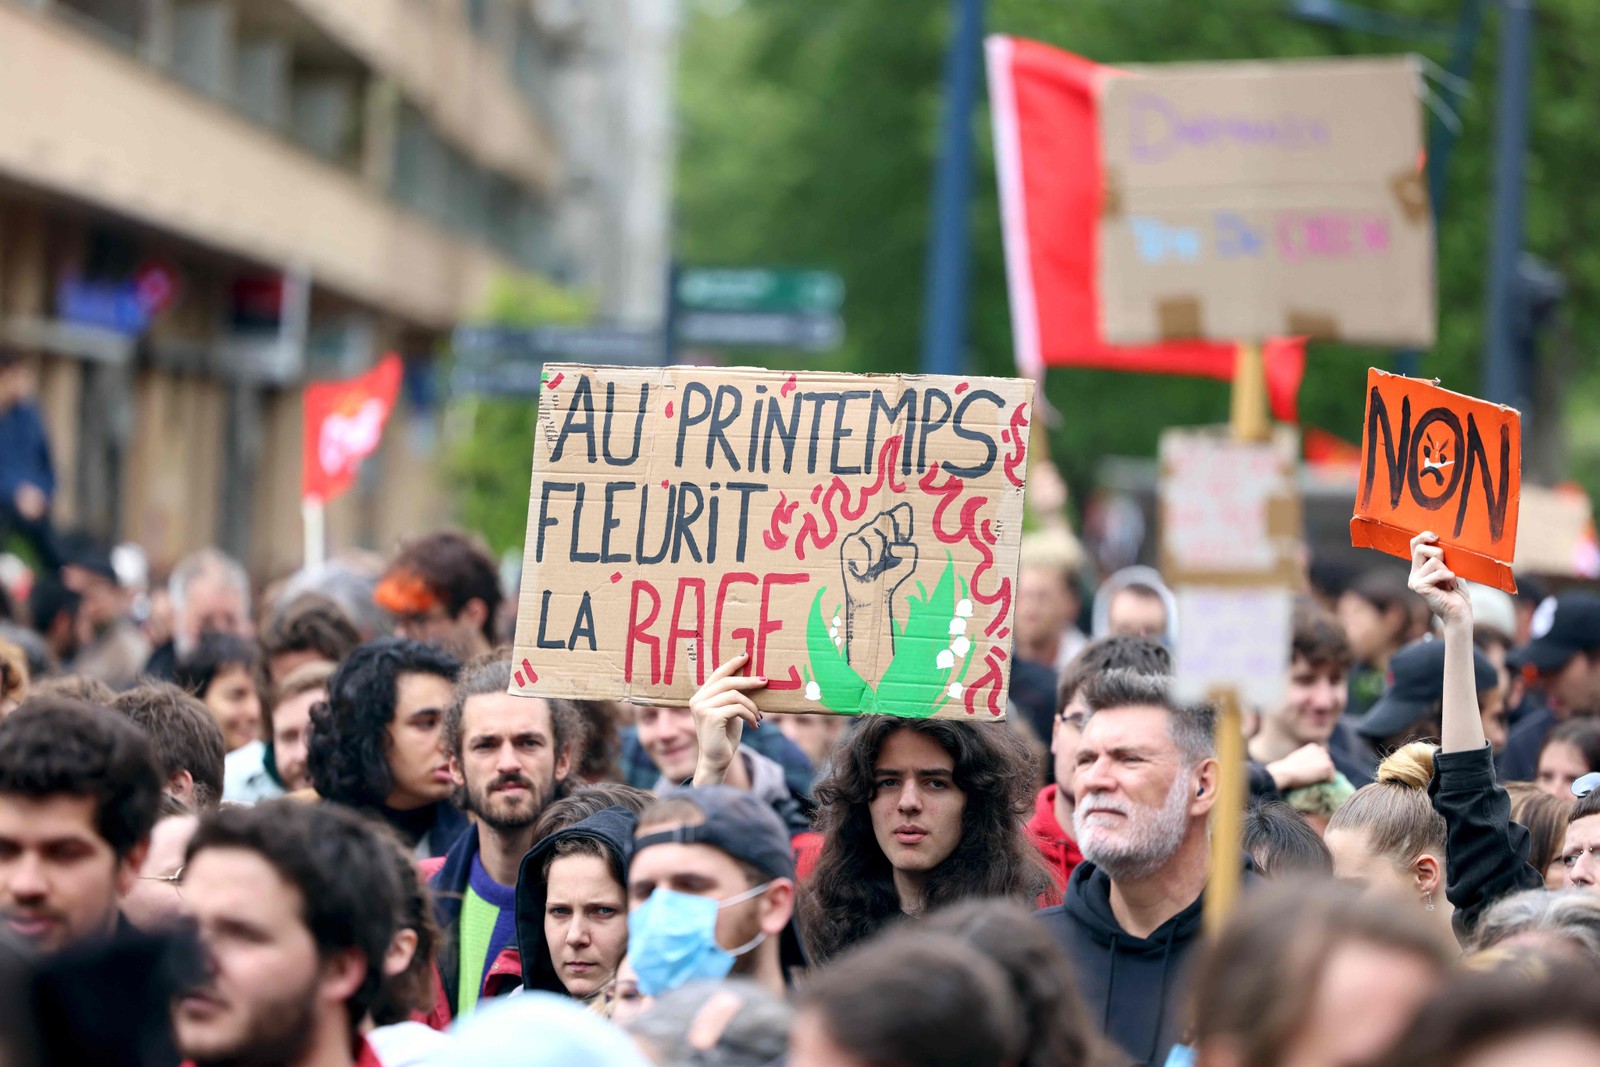 Manifestante exibe cartaz com a frase "Na primavera a raiva floresce", durante marcha pelo Primeiro de Maio, em Toulouse, sudoeste da França — Foto: CHARLY TRIBALLEAU / AFP